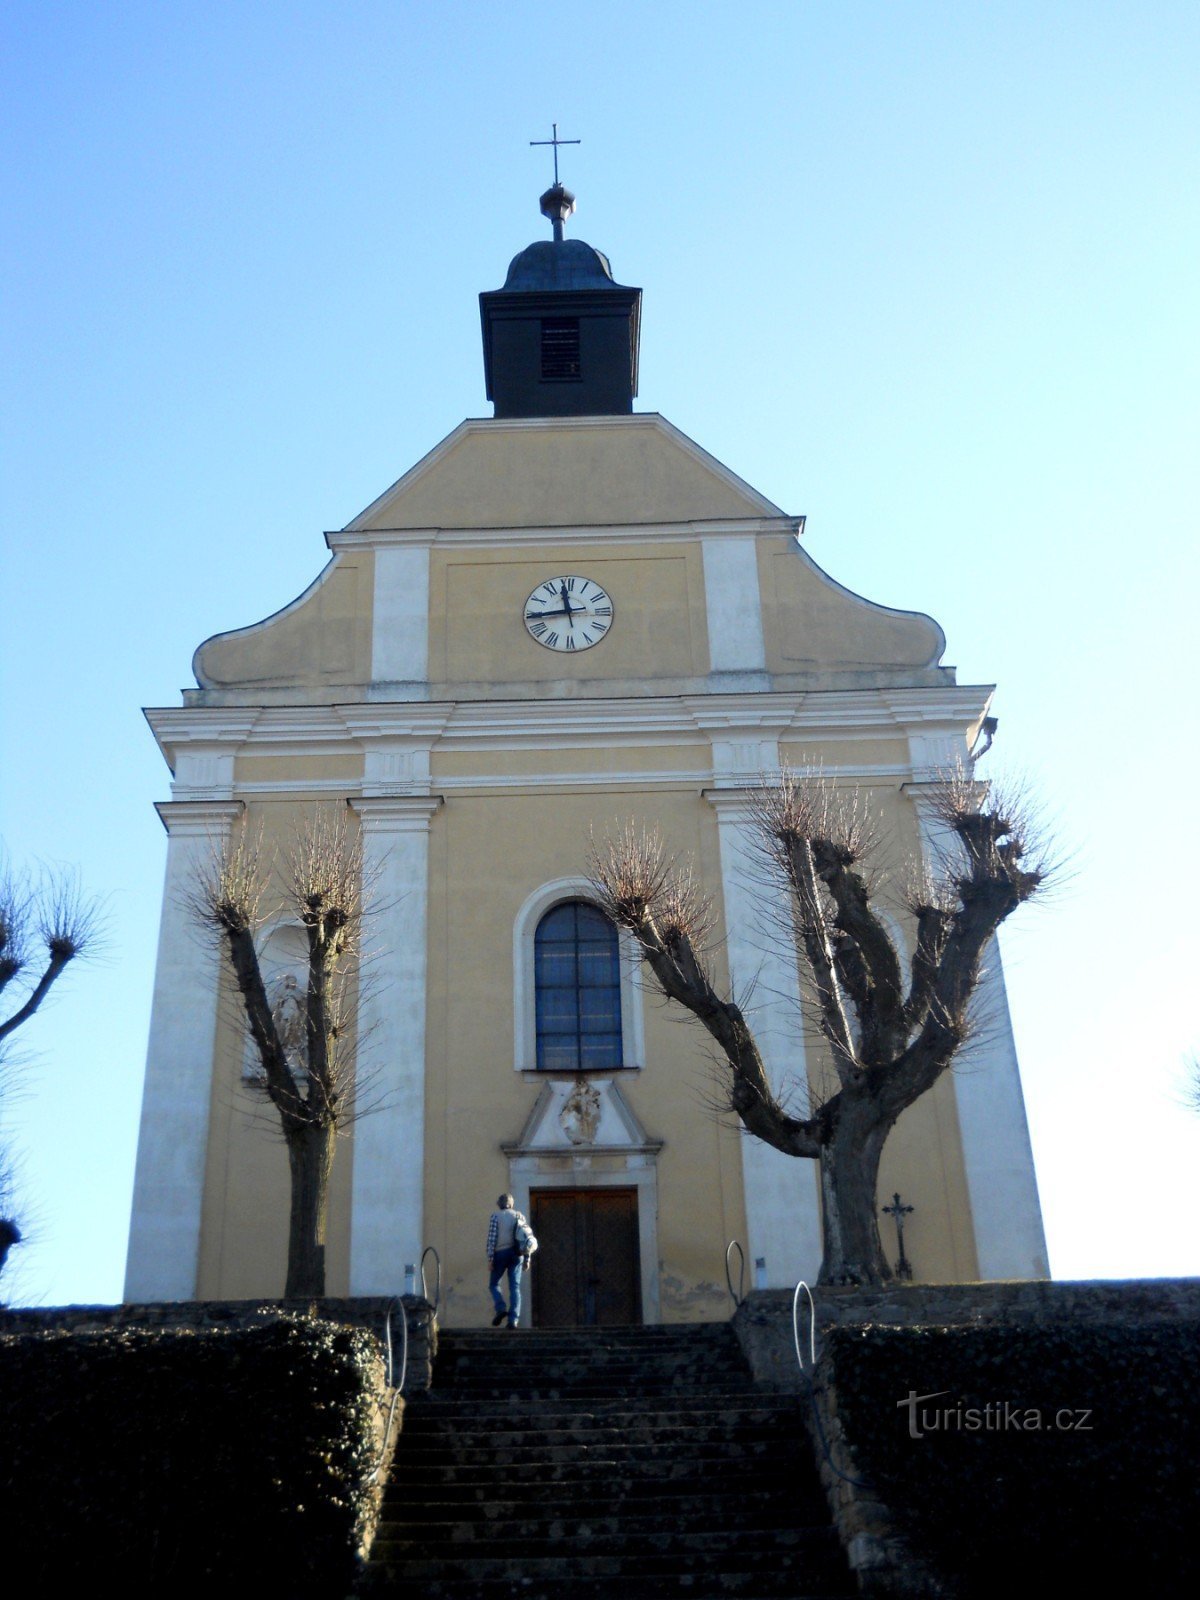 Kostelní Vydří - igreja de peregrinação de Nossa Senhora do Monte Carmelo